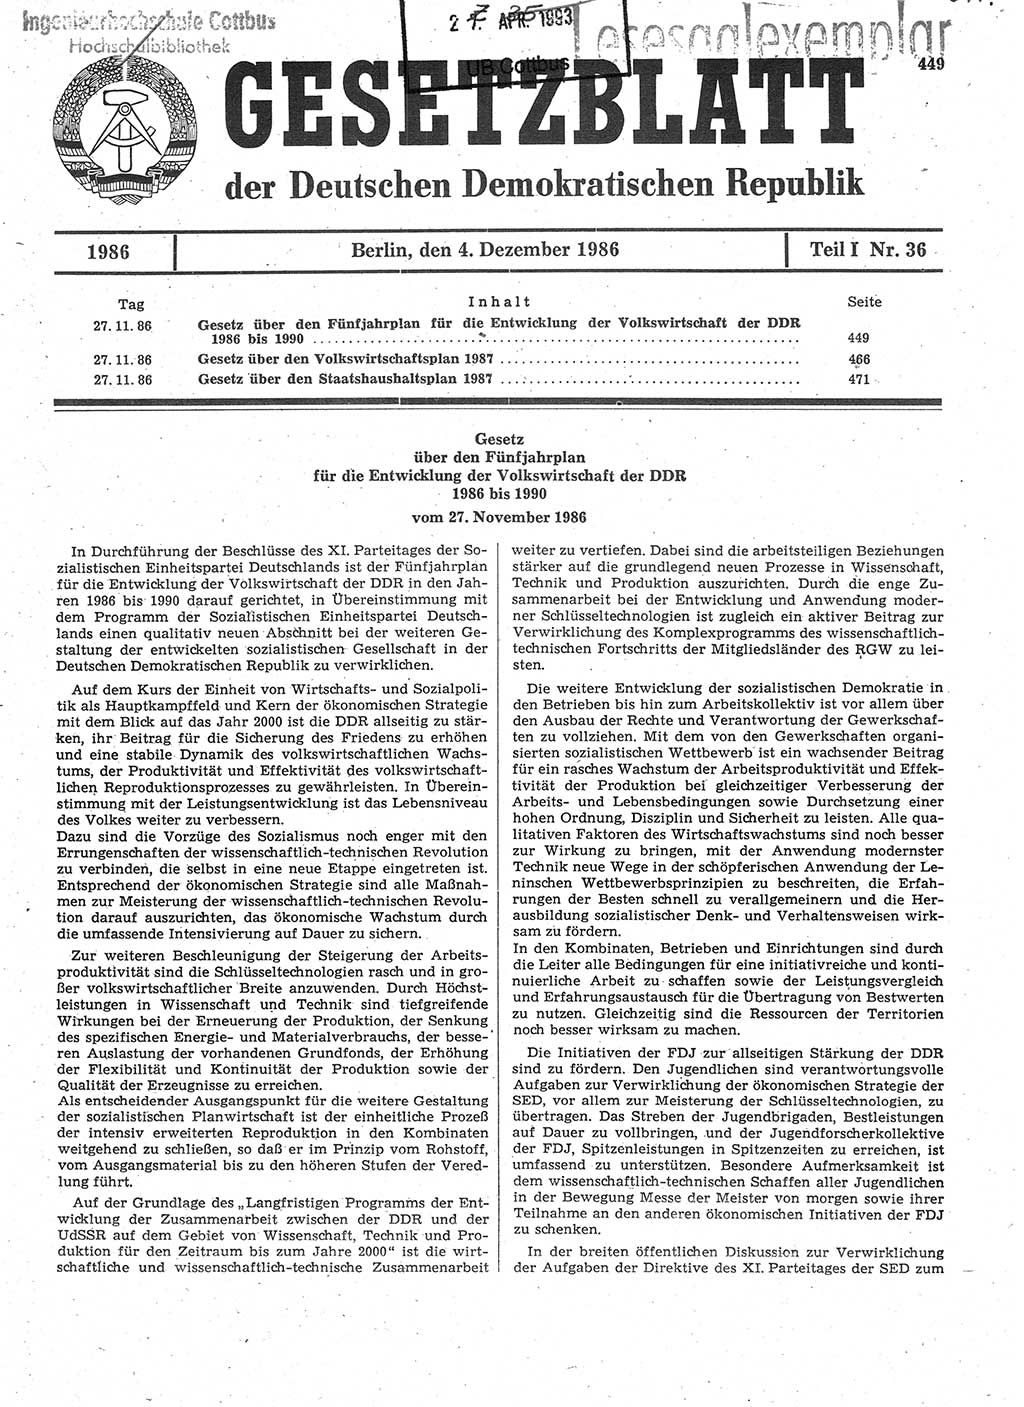 Gesetzblatt (GBl.) der Deutschen Demokratischen Republik (DDR) Teil Ⅰ 1986, Seite 449 (GBl. DDR Ⅰ 1986, S. 449)